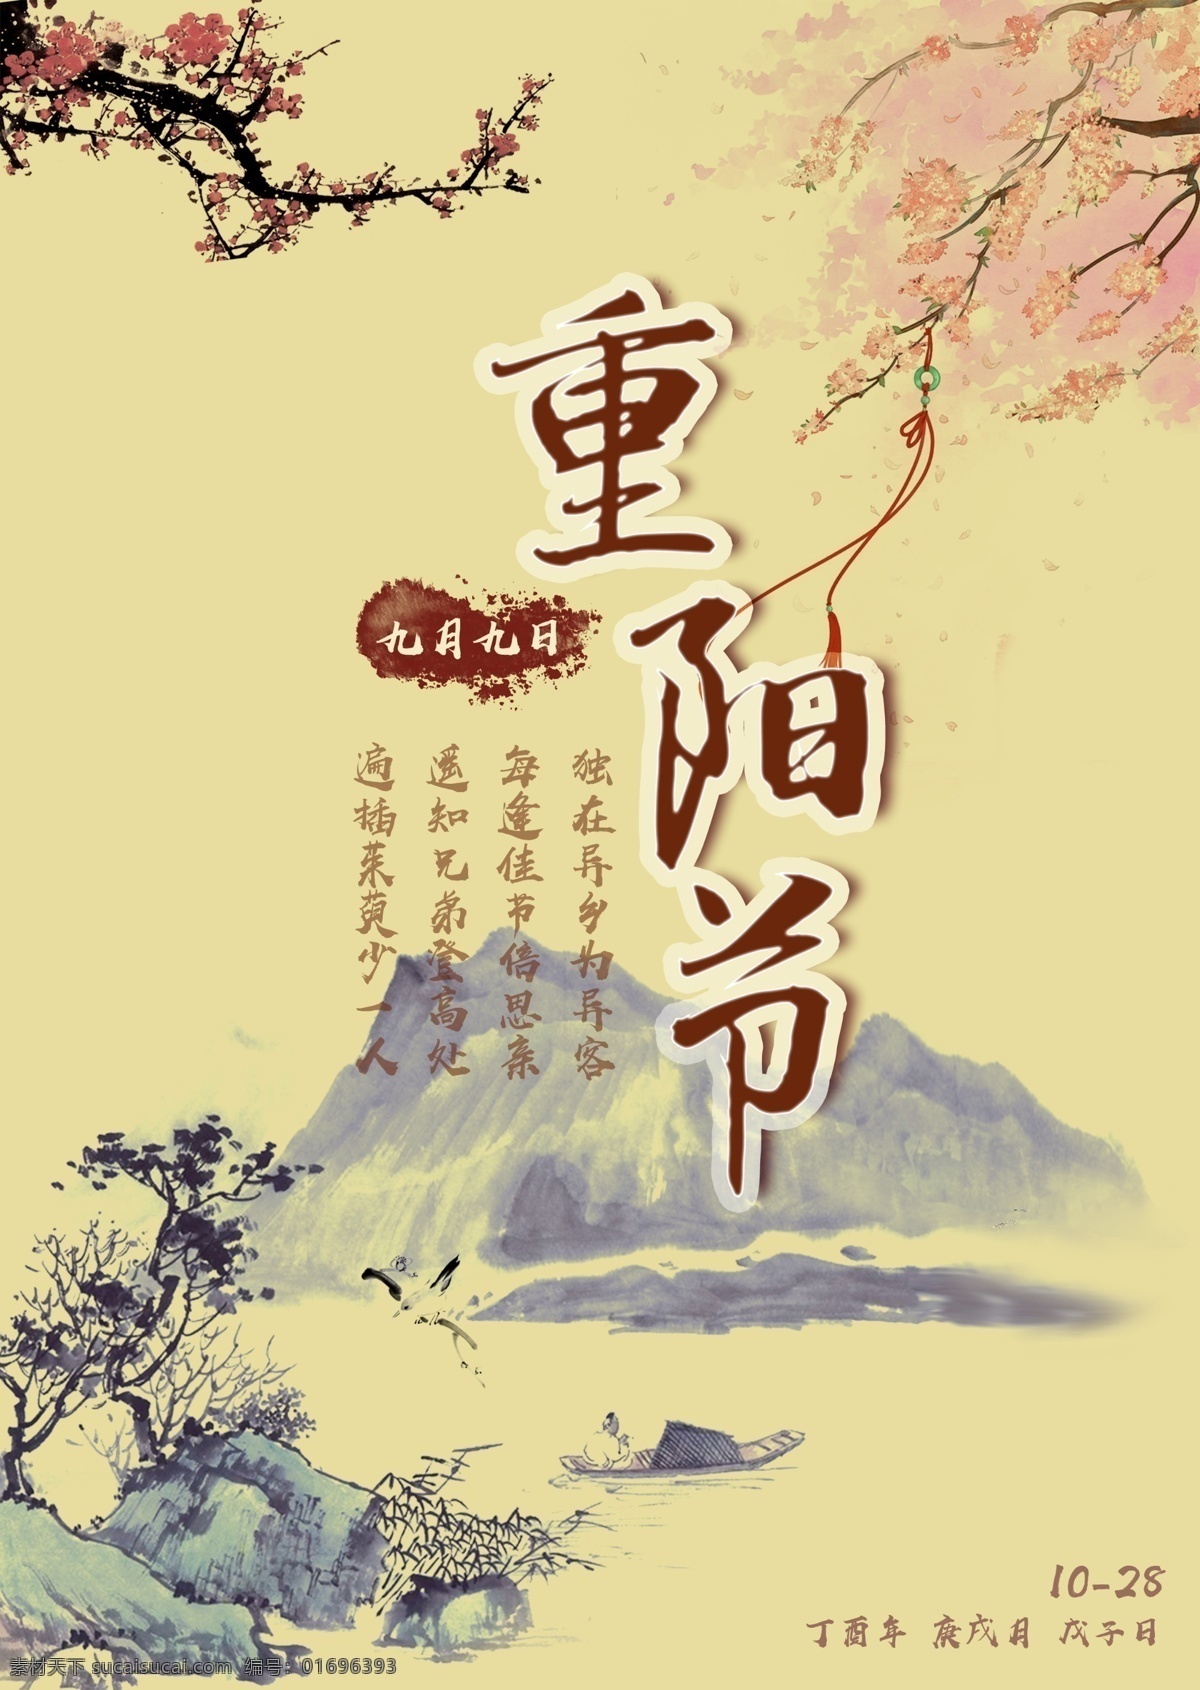 暖色 水墨 重阳节 宣传海报 中国传统节日 中国风海报 中国古典文化 重阳节海报 中国风